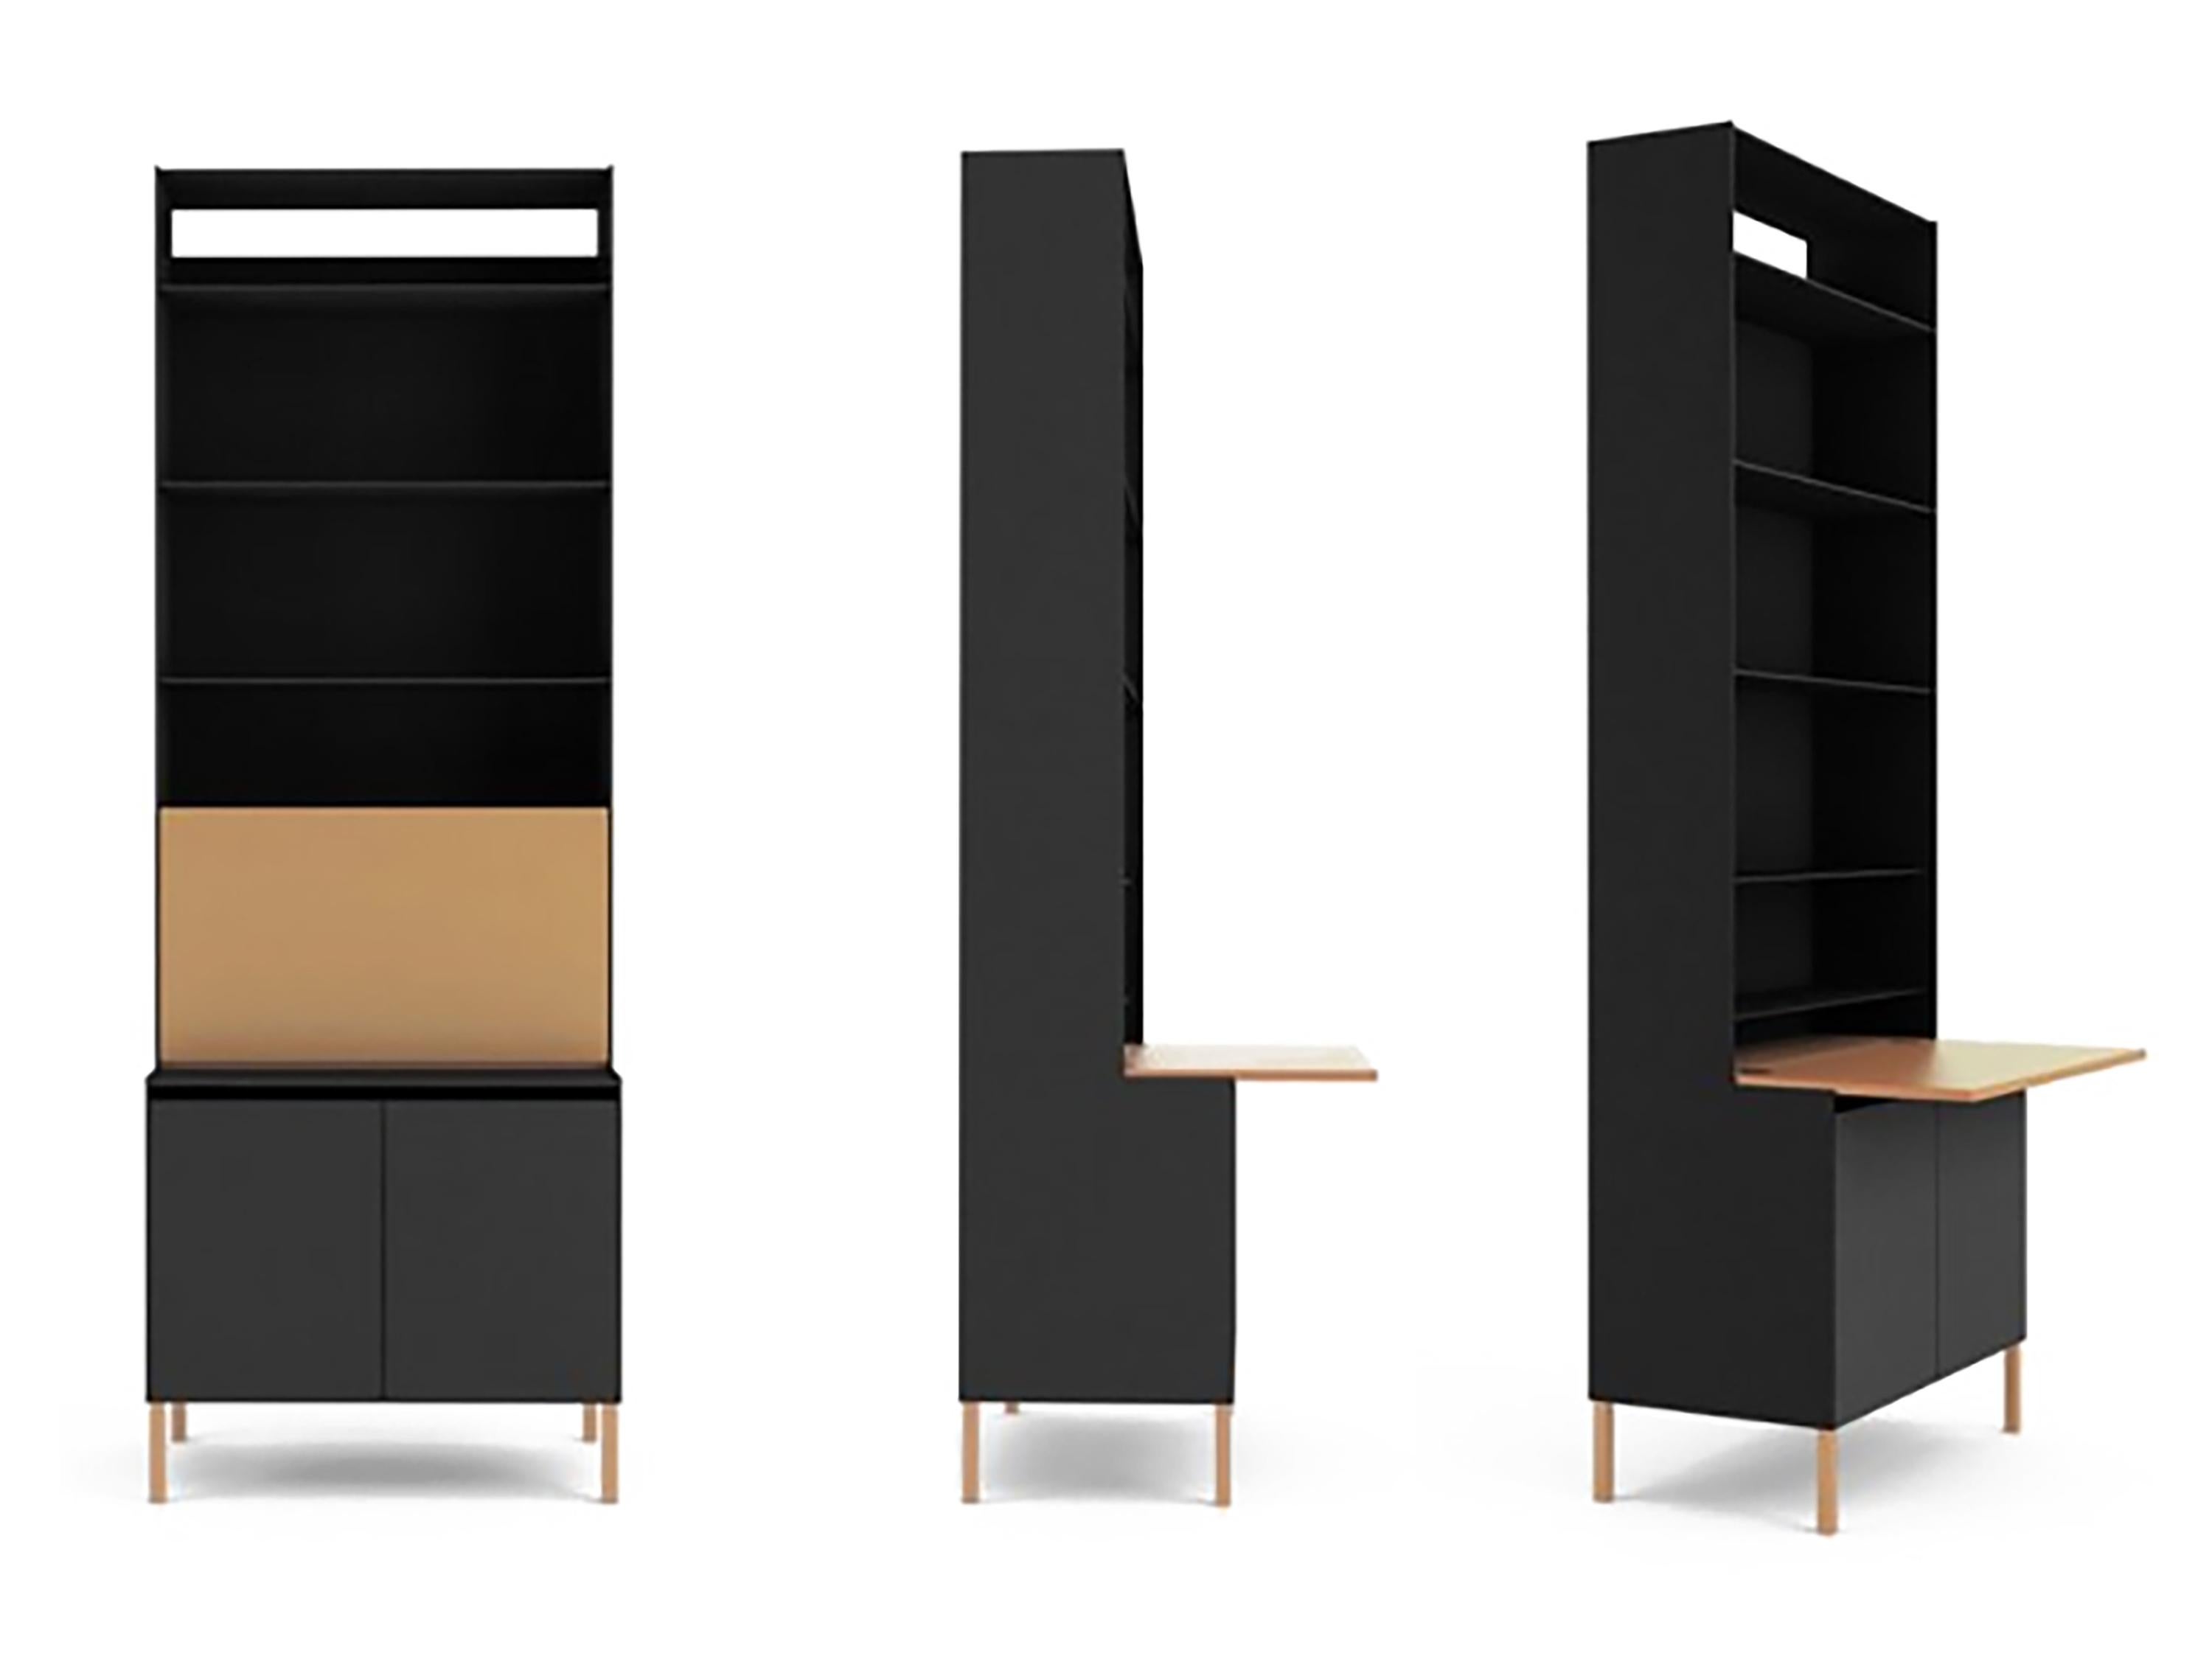 Der Sekretär: Entworfen vom amerikanischen Industrie- und Möbeldesigner Jonathan Nesci, hergestellt aus pulverbeschichtetem Aluminium, Stahl und Leder.

___

Dies ist ein wunderschön gebautes, minimalistisches, modernes Sekretariat/Bücherregal,